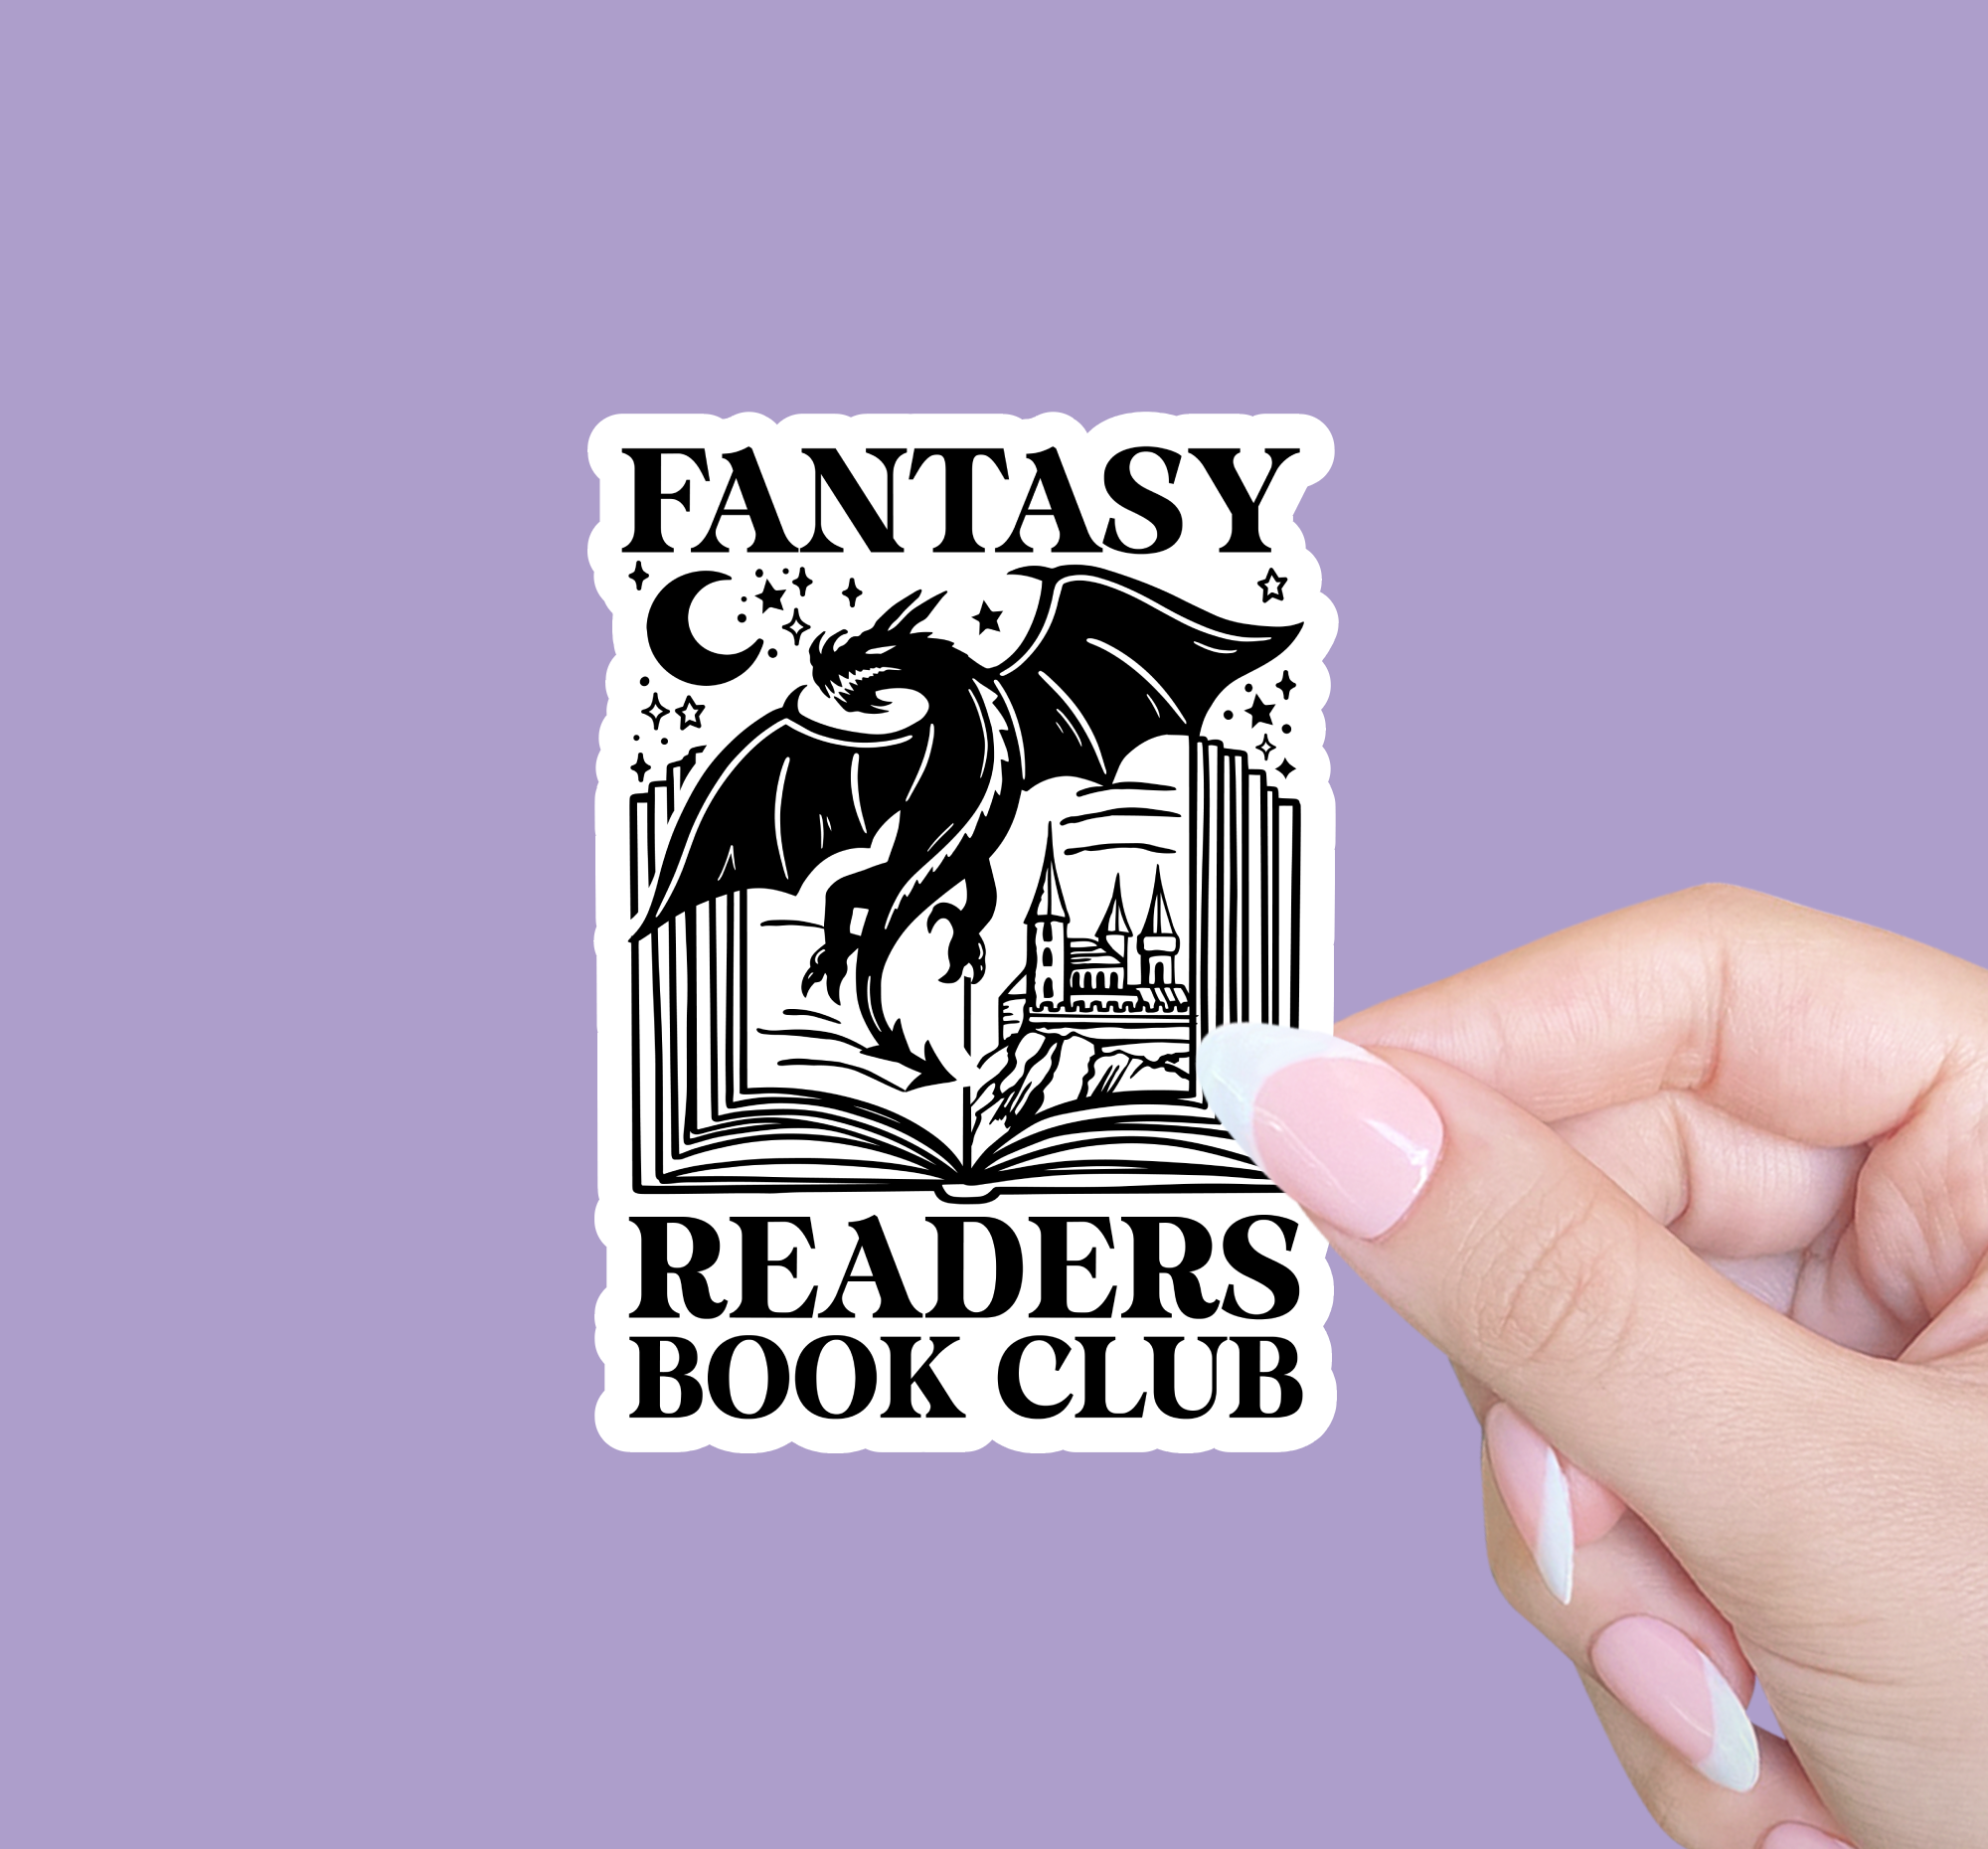 Fantasy readers book club